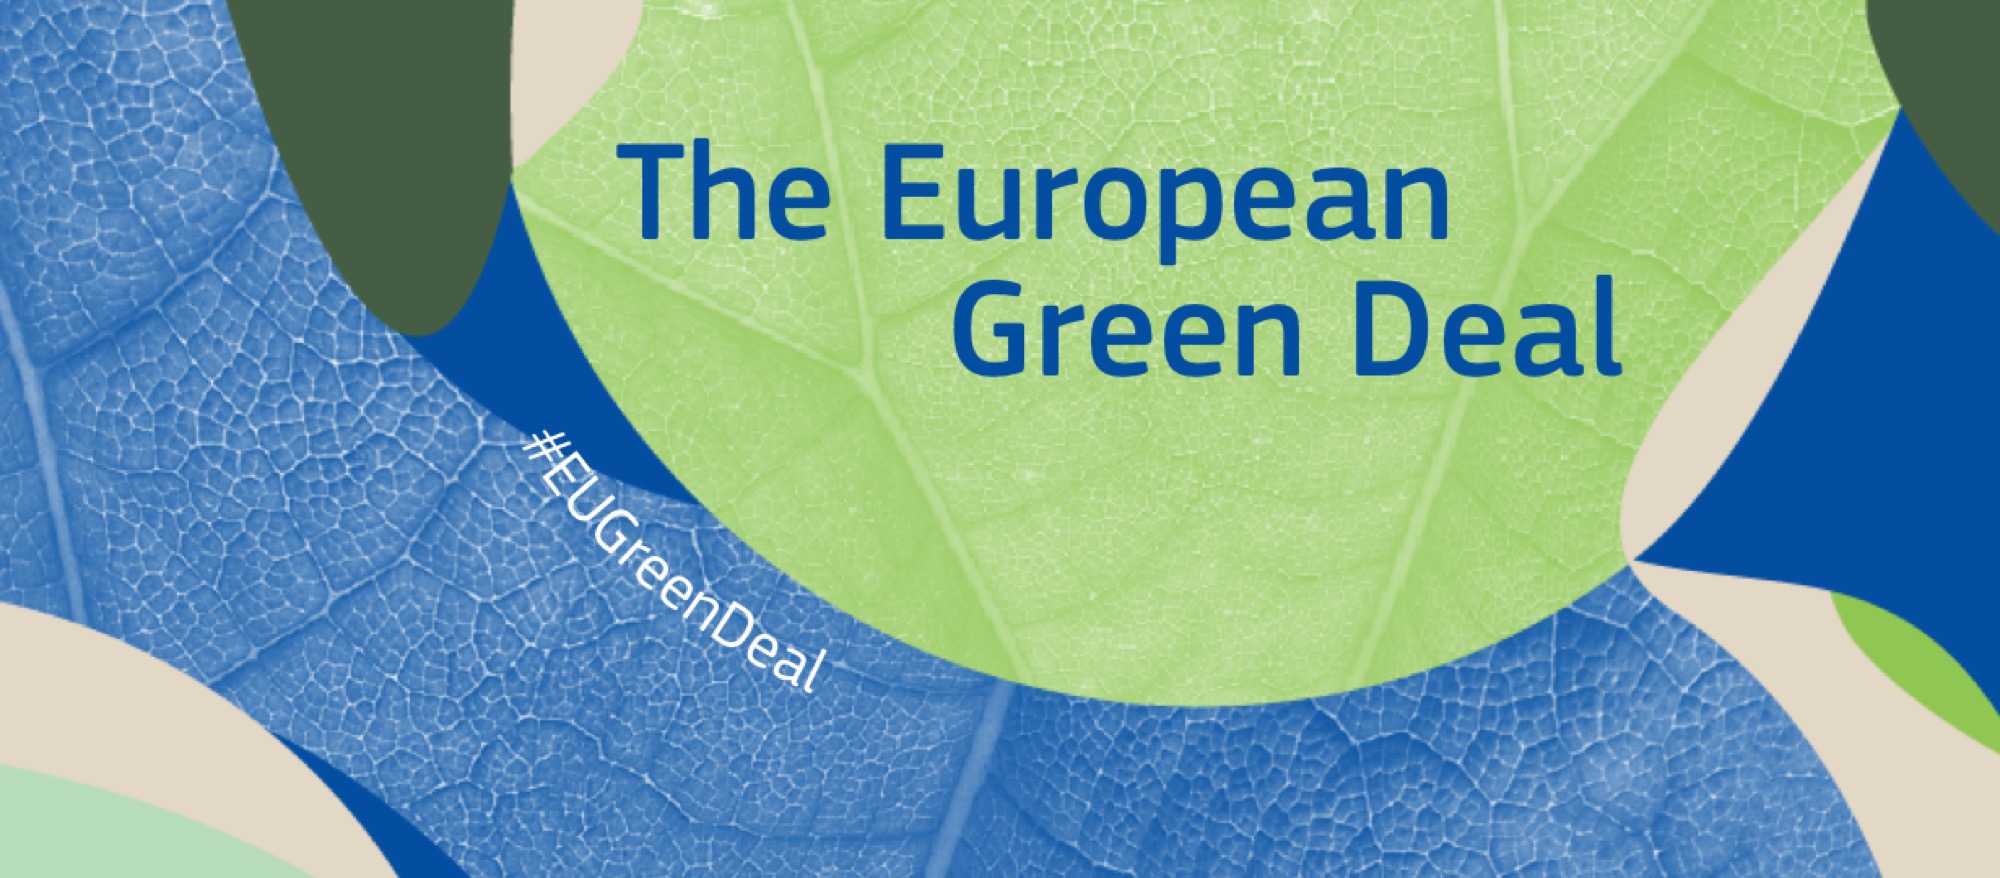 EU Green Deal verändert die Wirtschaft – jetzt proaktiv handeln!